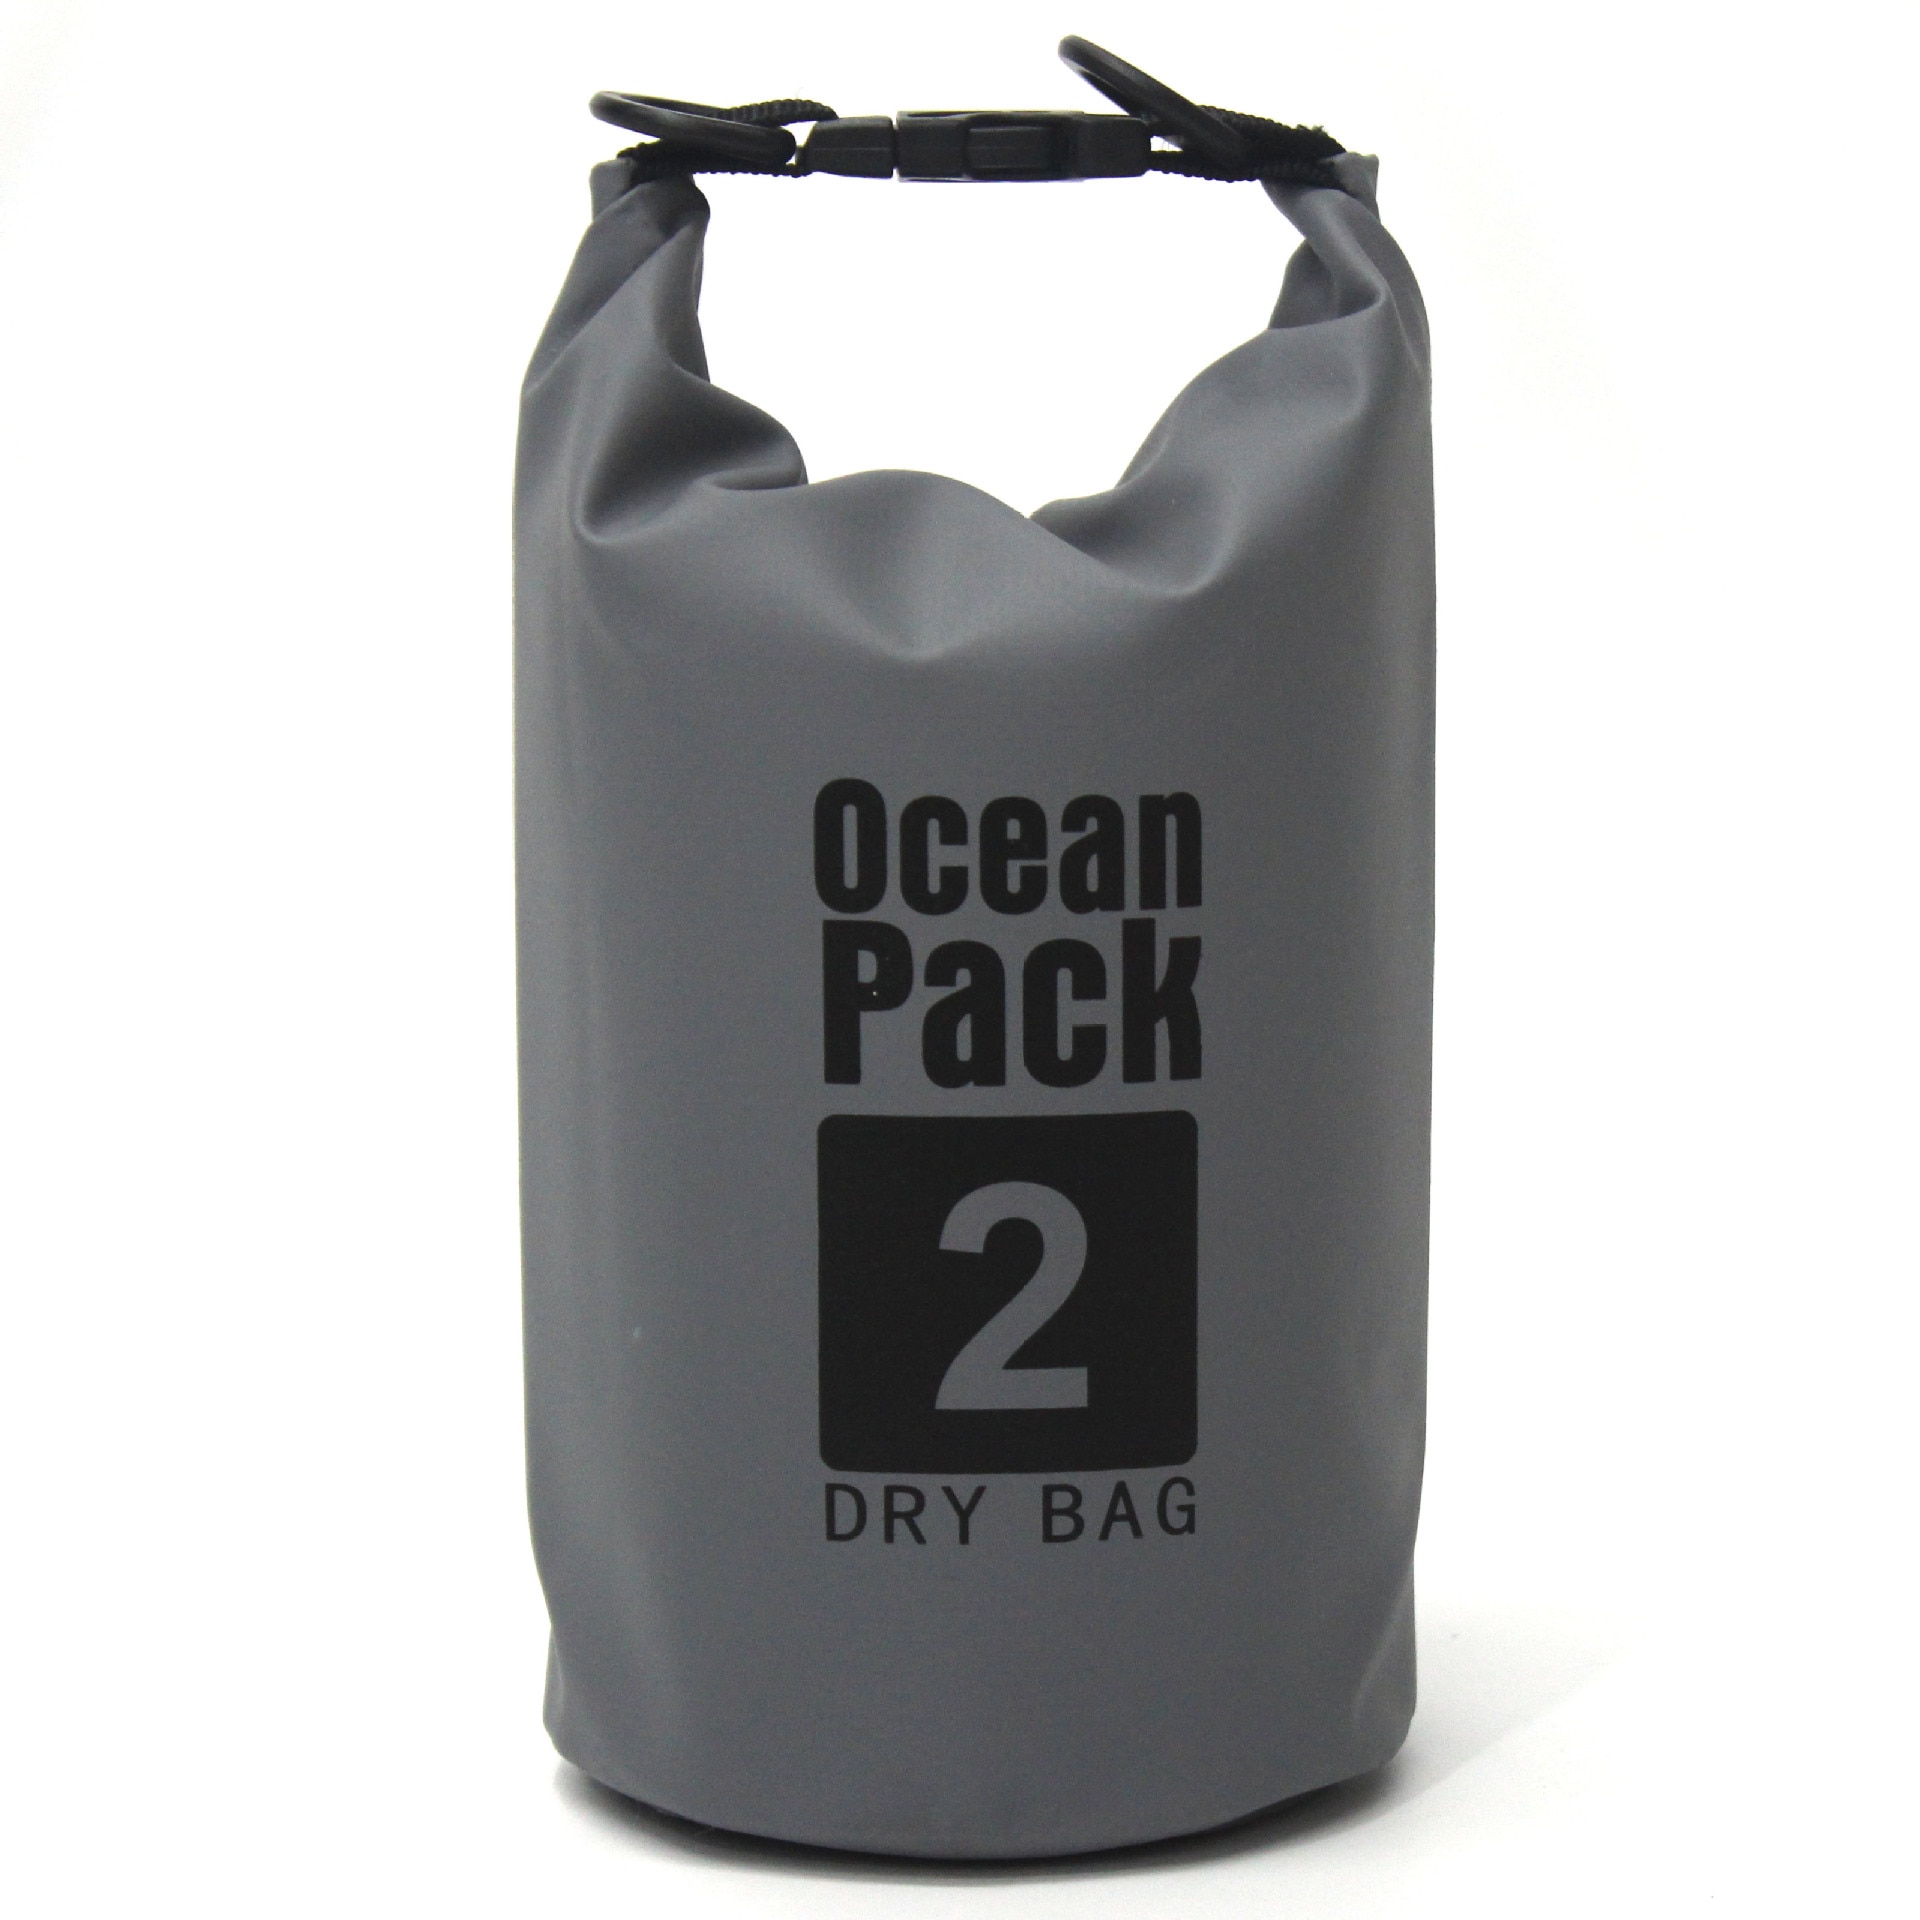 2L-30L PVC Waterproof Dry Bag Sack Ocean Pack Floating Boating Kayaking Camping 